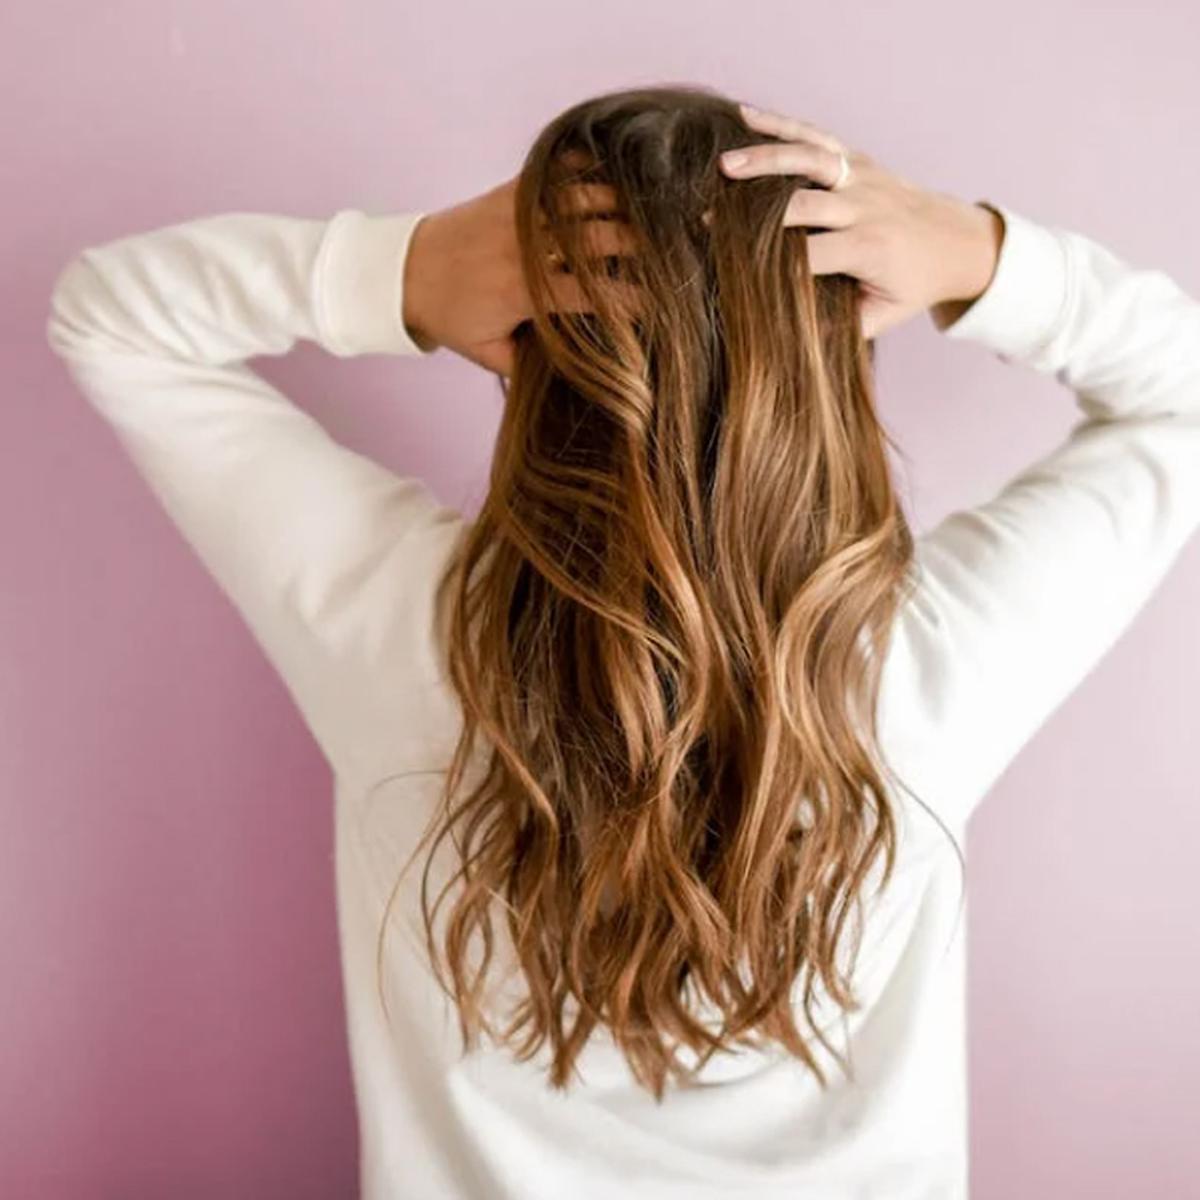 Remedios caseros: cómo controlar el frizz del cabello de natural | hacks | nnda nnni mg | RESPUESTAS |